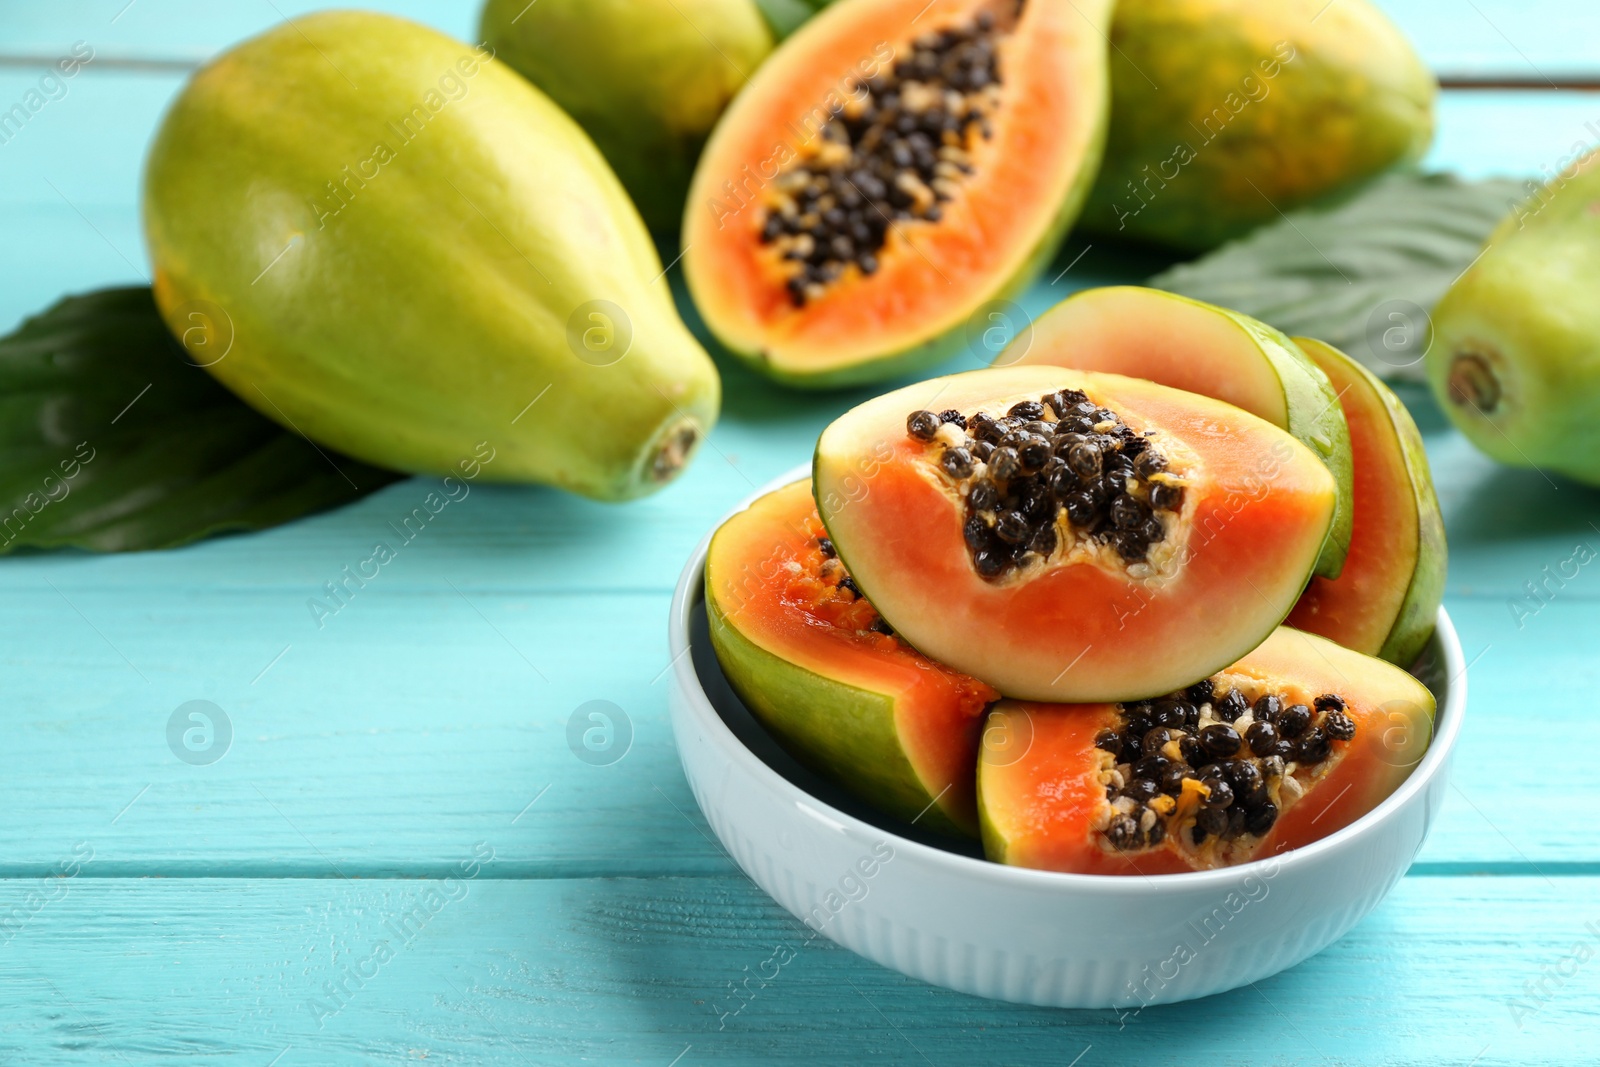 Photo of Fresh ripe papaya fruits on turquoise wooden table